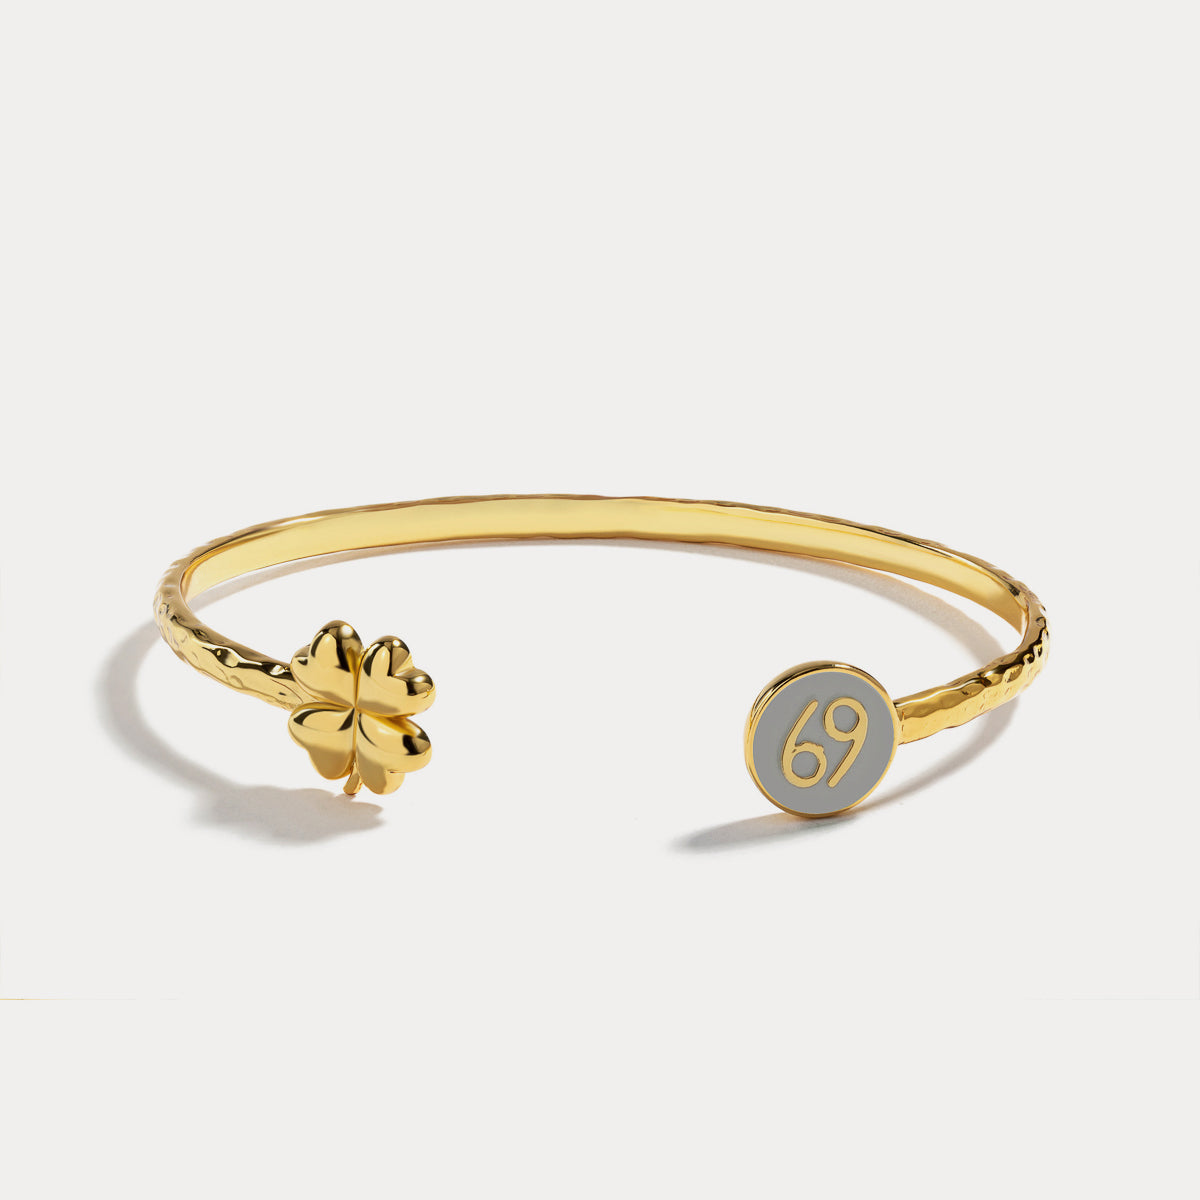 Cancer astrological sign bracelet